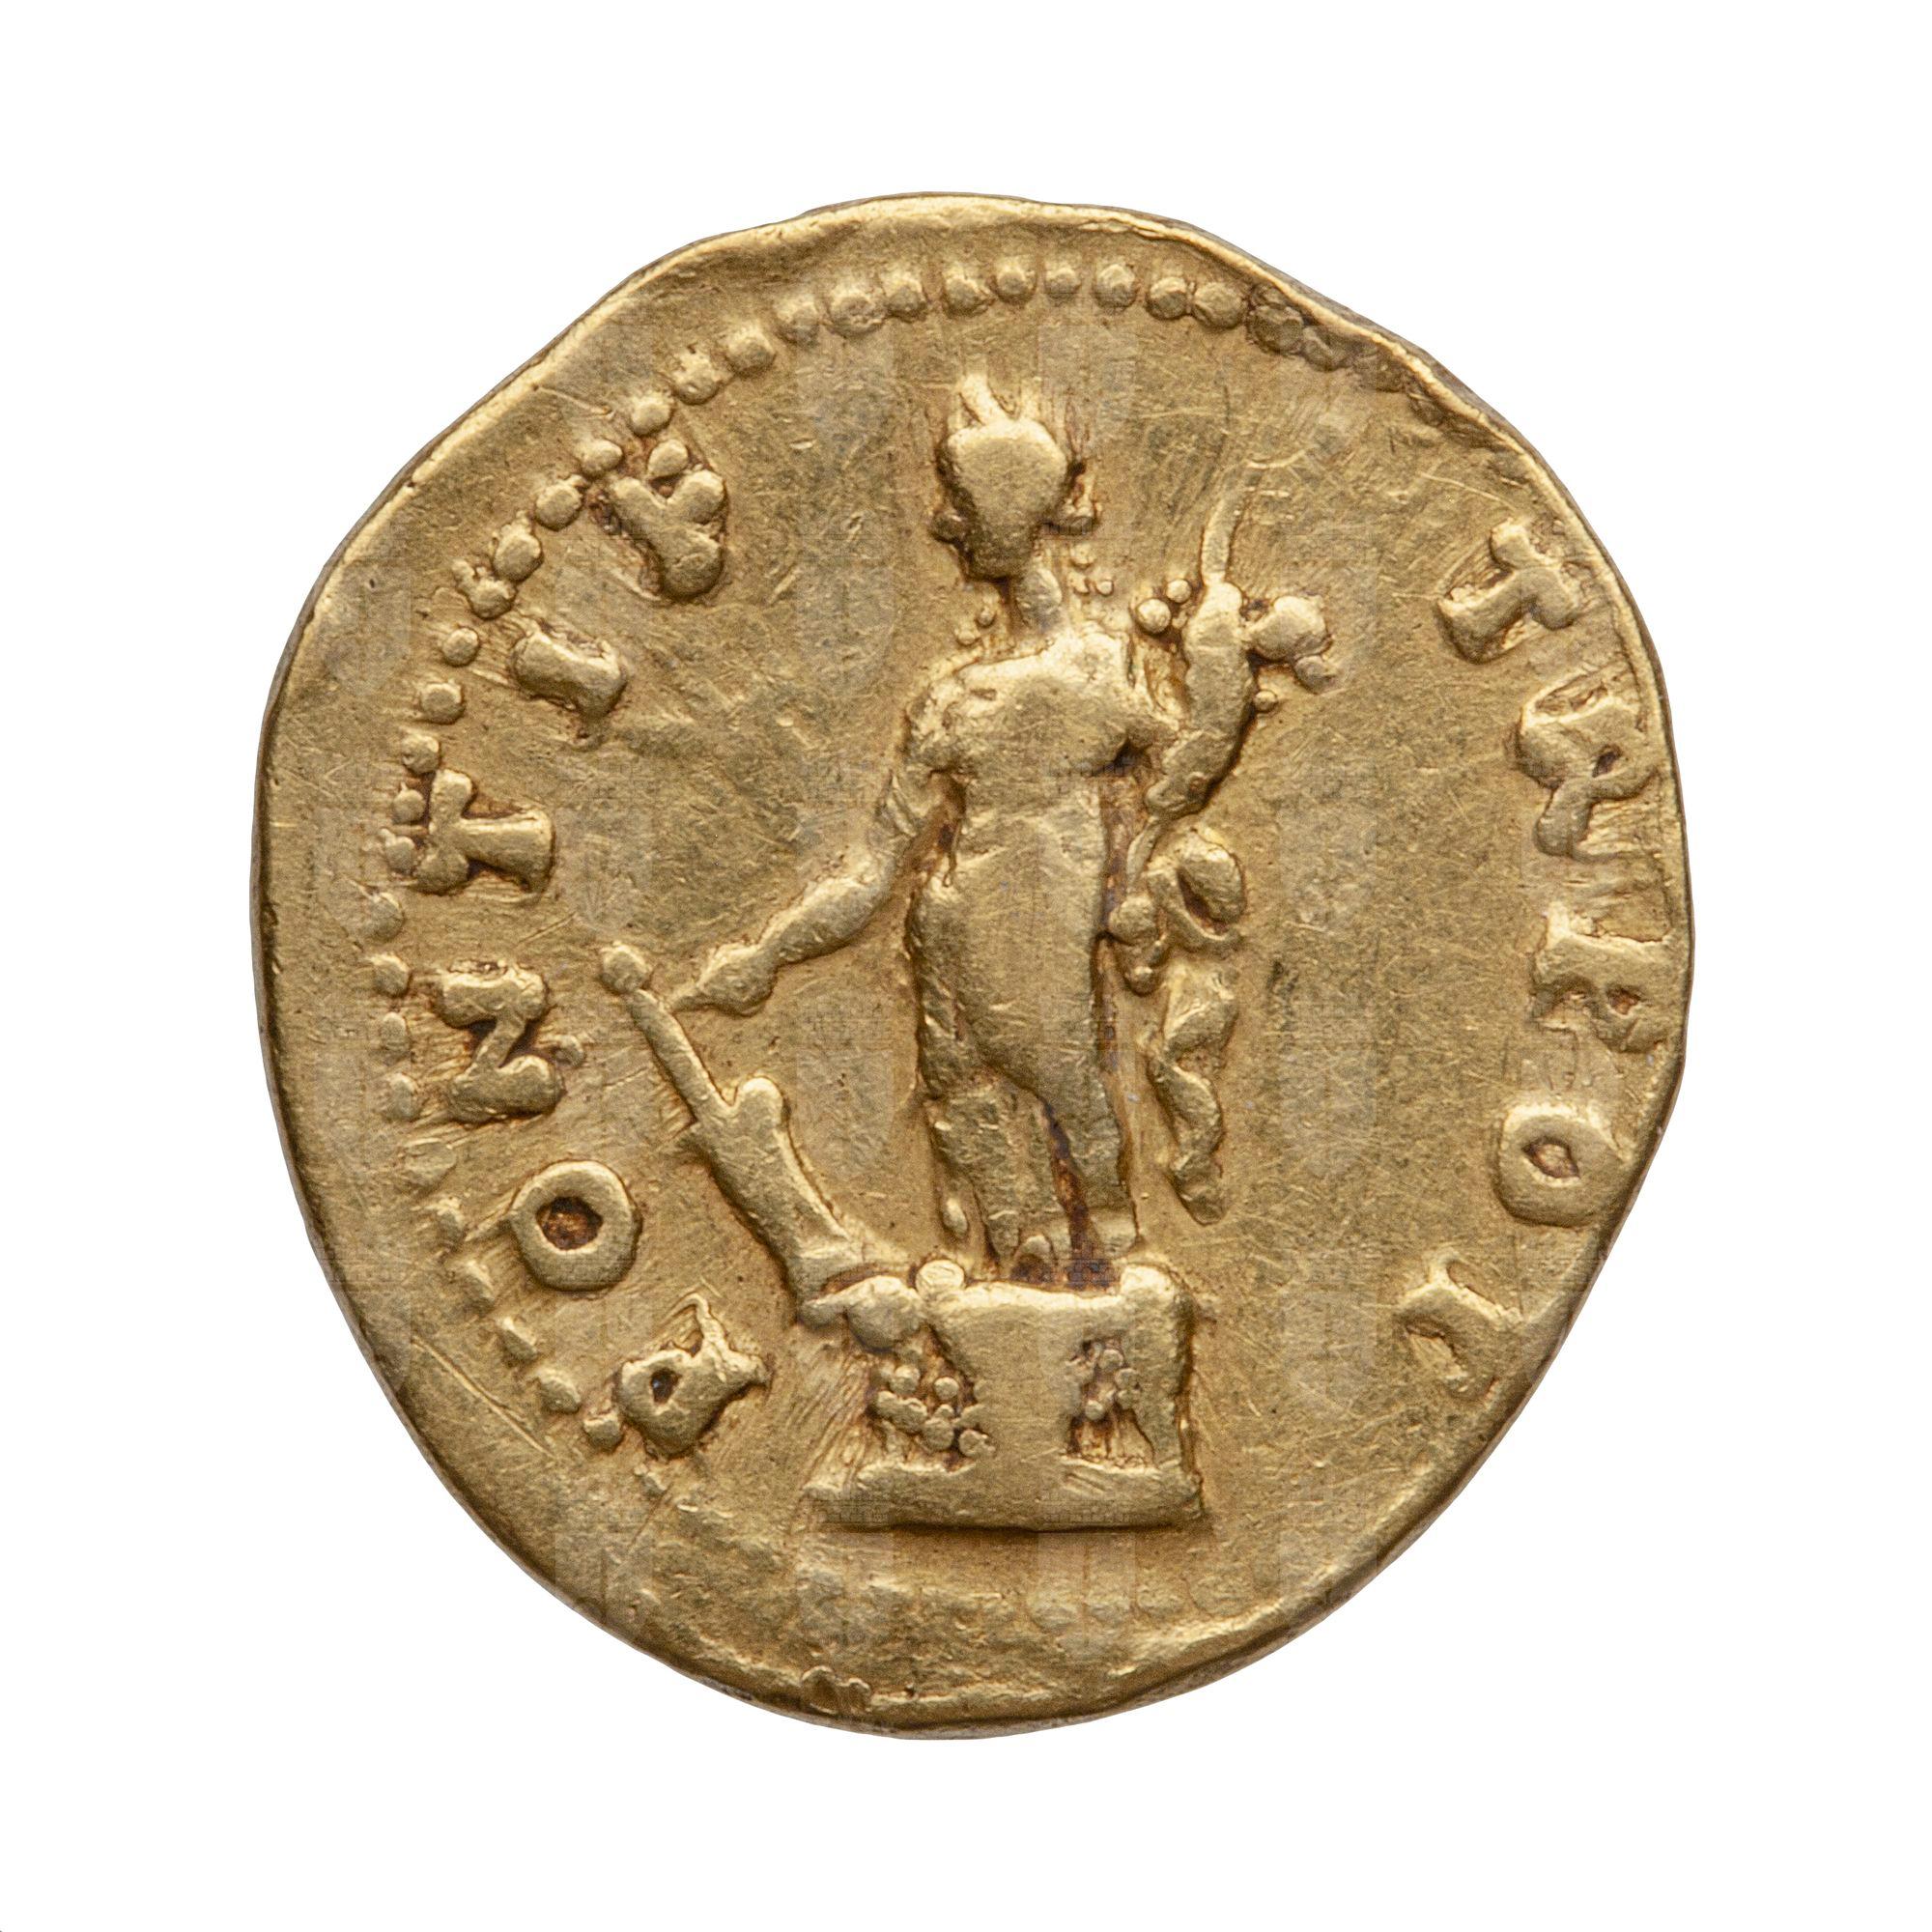 https://catalogomusei.comune.trieste.it/samira/resource/image/reperti-archeologici/Roma 760 R Tito.jpg?token=65e6c51b007bd